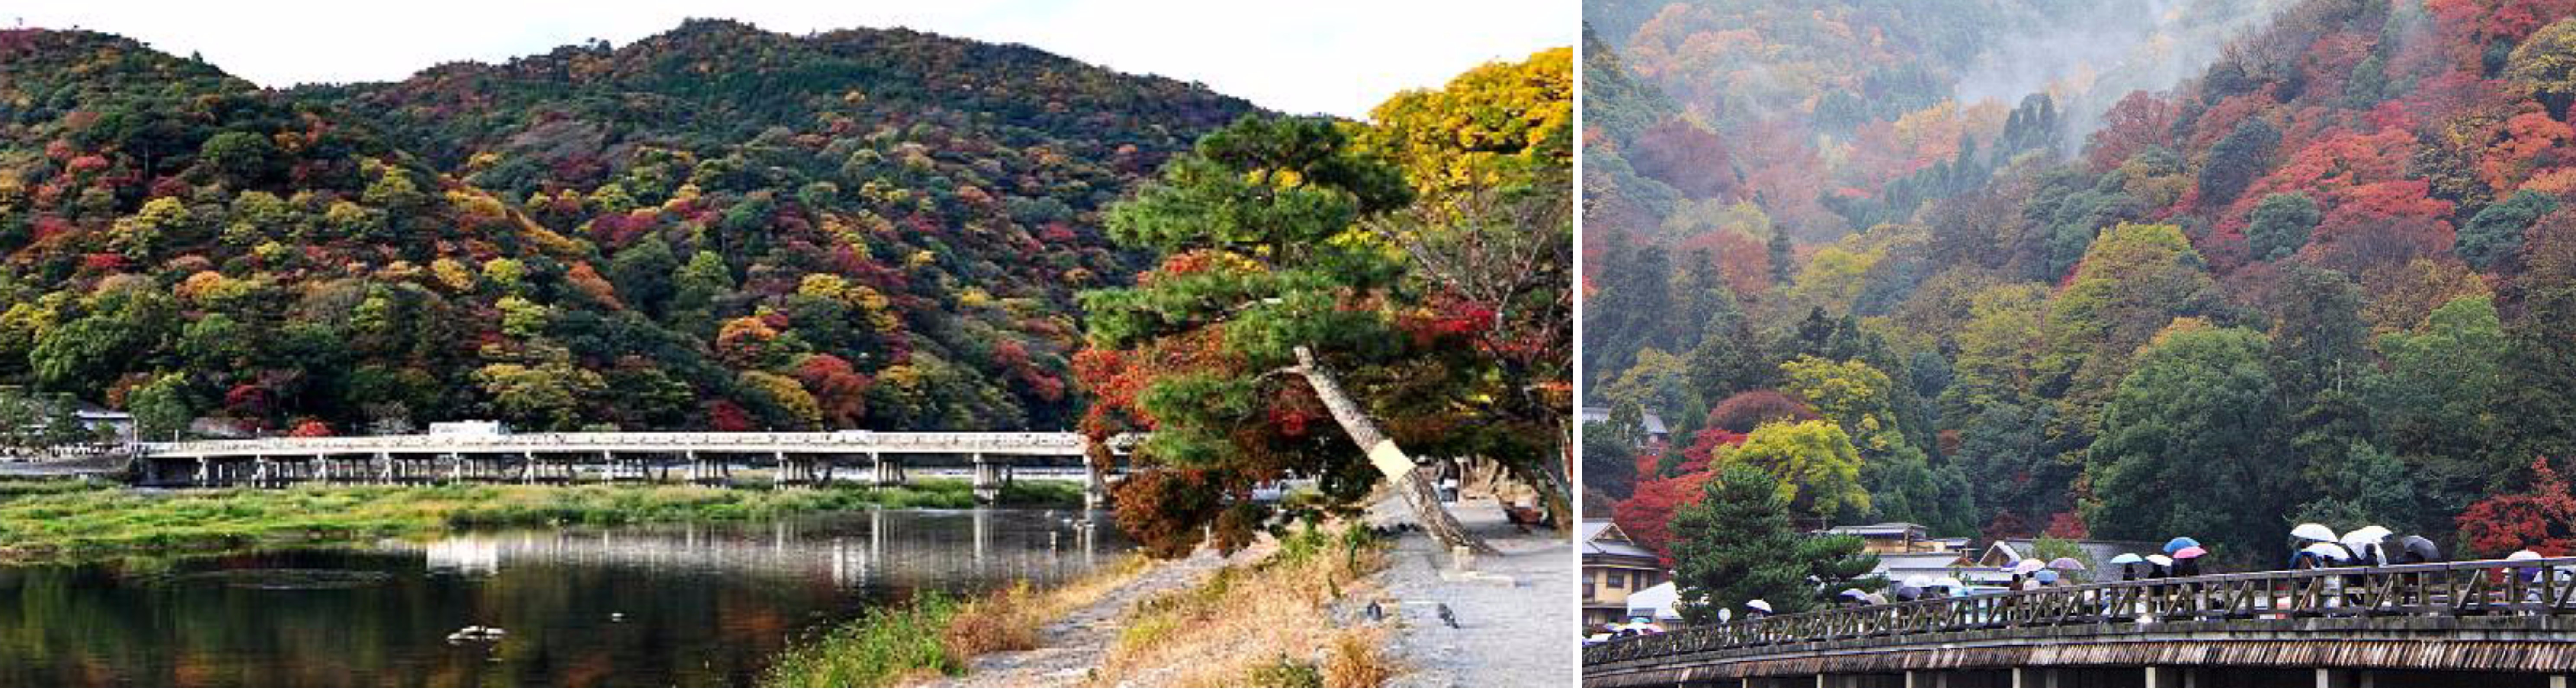 โอซาก้า – คาเมโอกะ – นั่งรถไฟสายโรแมนติก – เขาอาราชิยามะ – สะพานโทเกะซึเคียว – วัดเทนริวจิ – ป่าไผ่ – โอซาก้า - 2